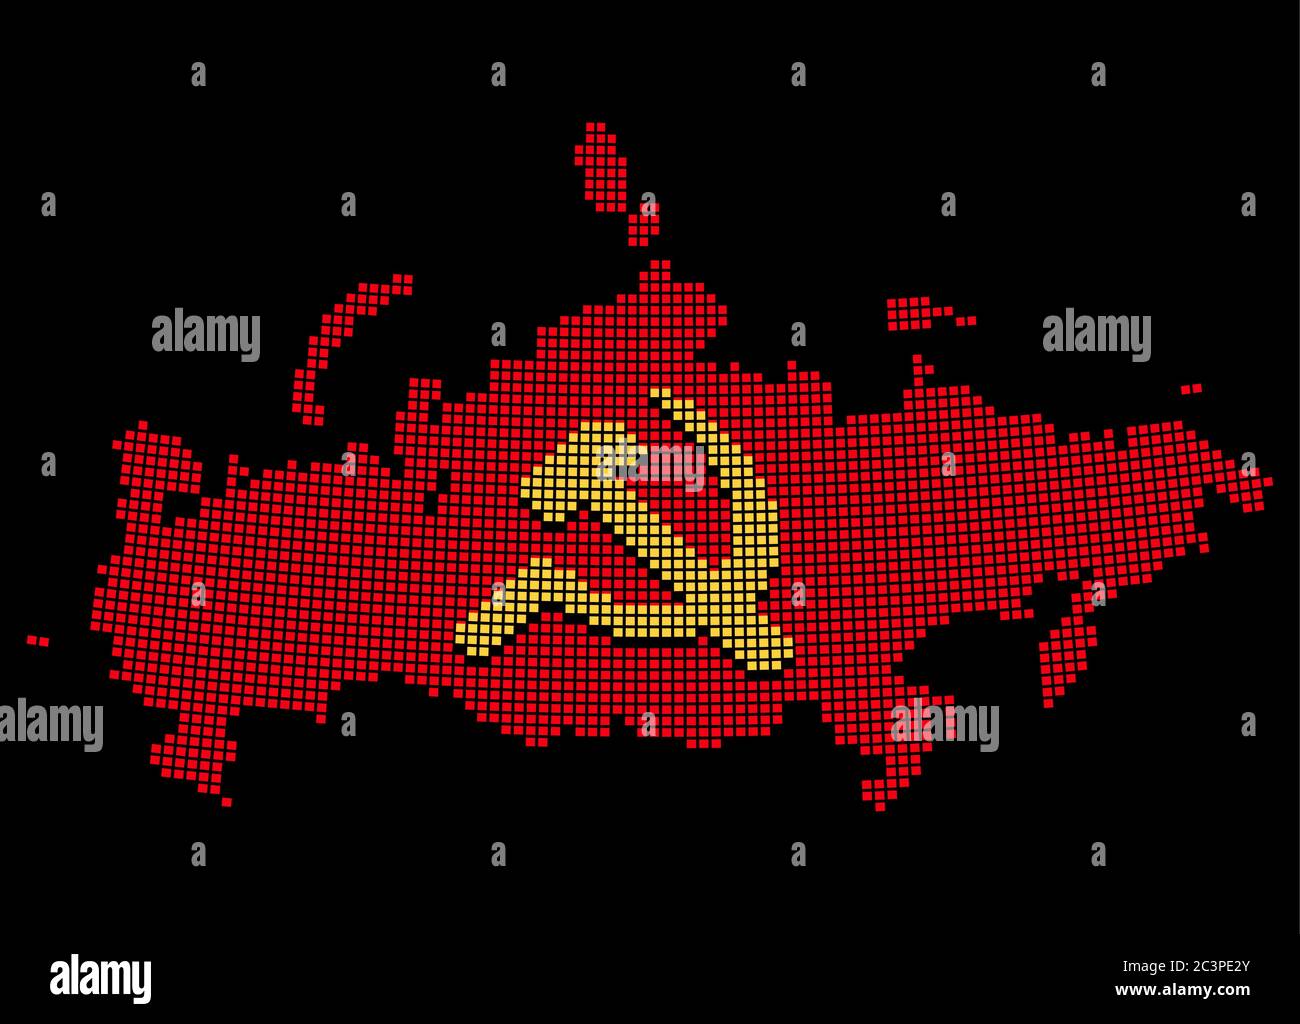 Stilisierte UdSSR-Karte mit Hammer und Sichel, kommunistisches Russland-Symbol. Pixel Art Stil Silhouette. Isolierte Vektordarstellung. Stock Vektor